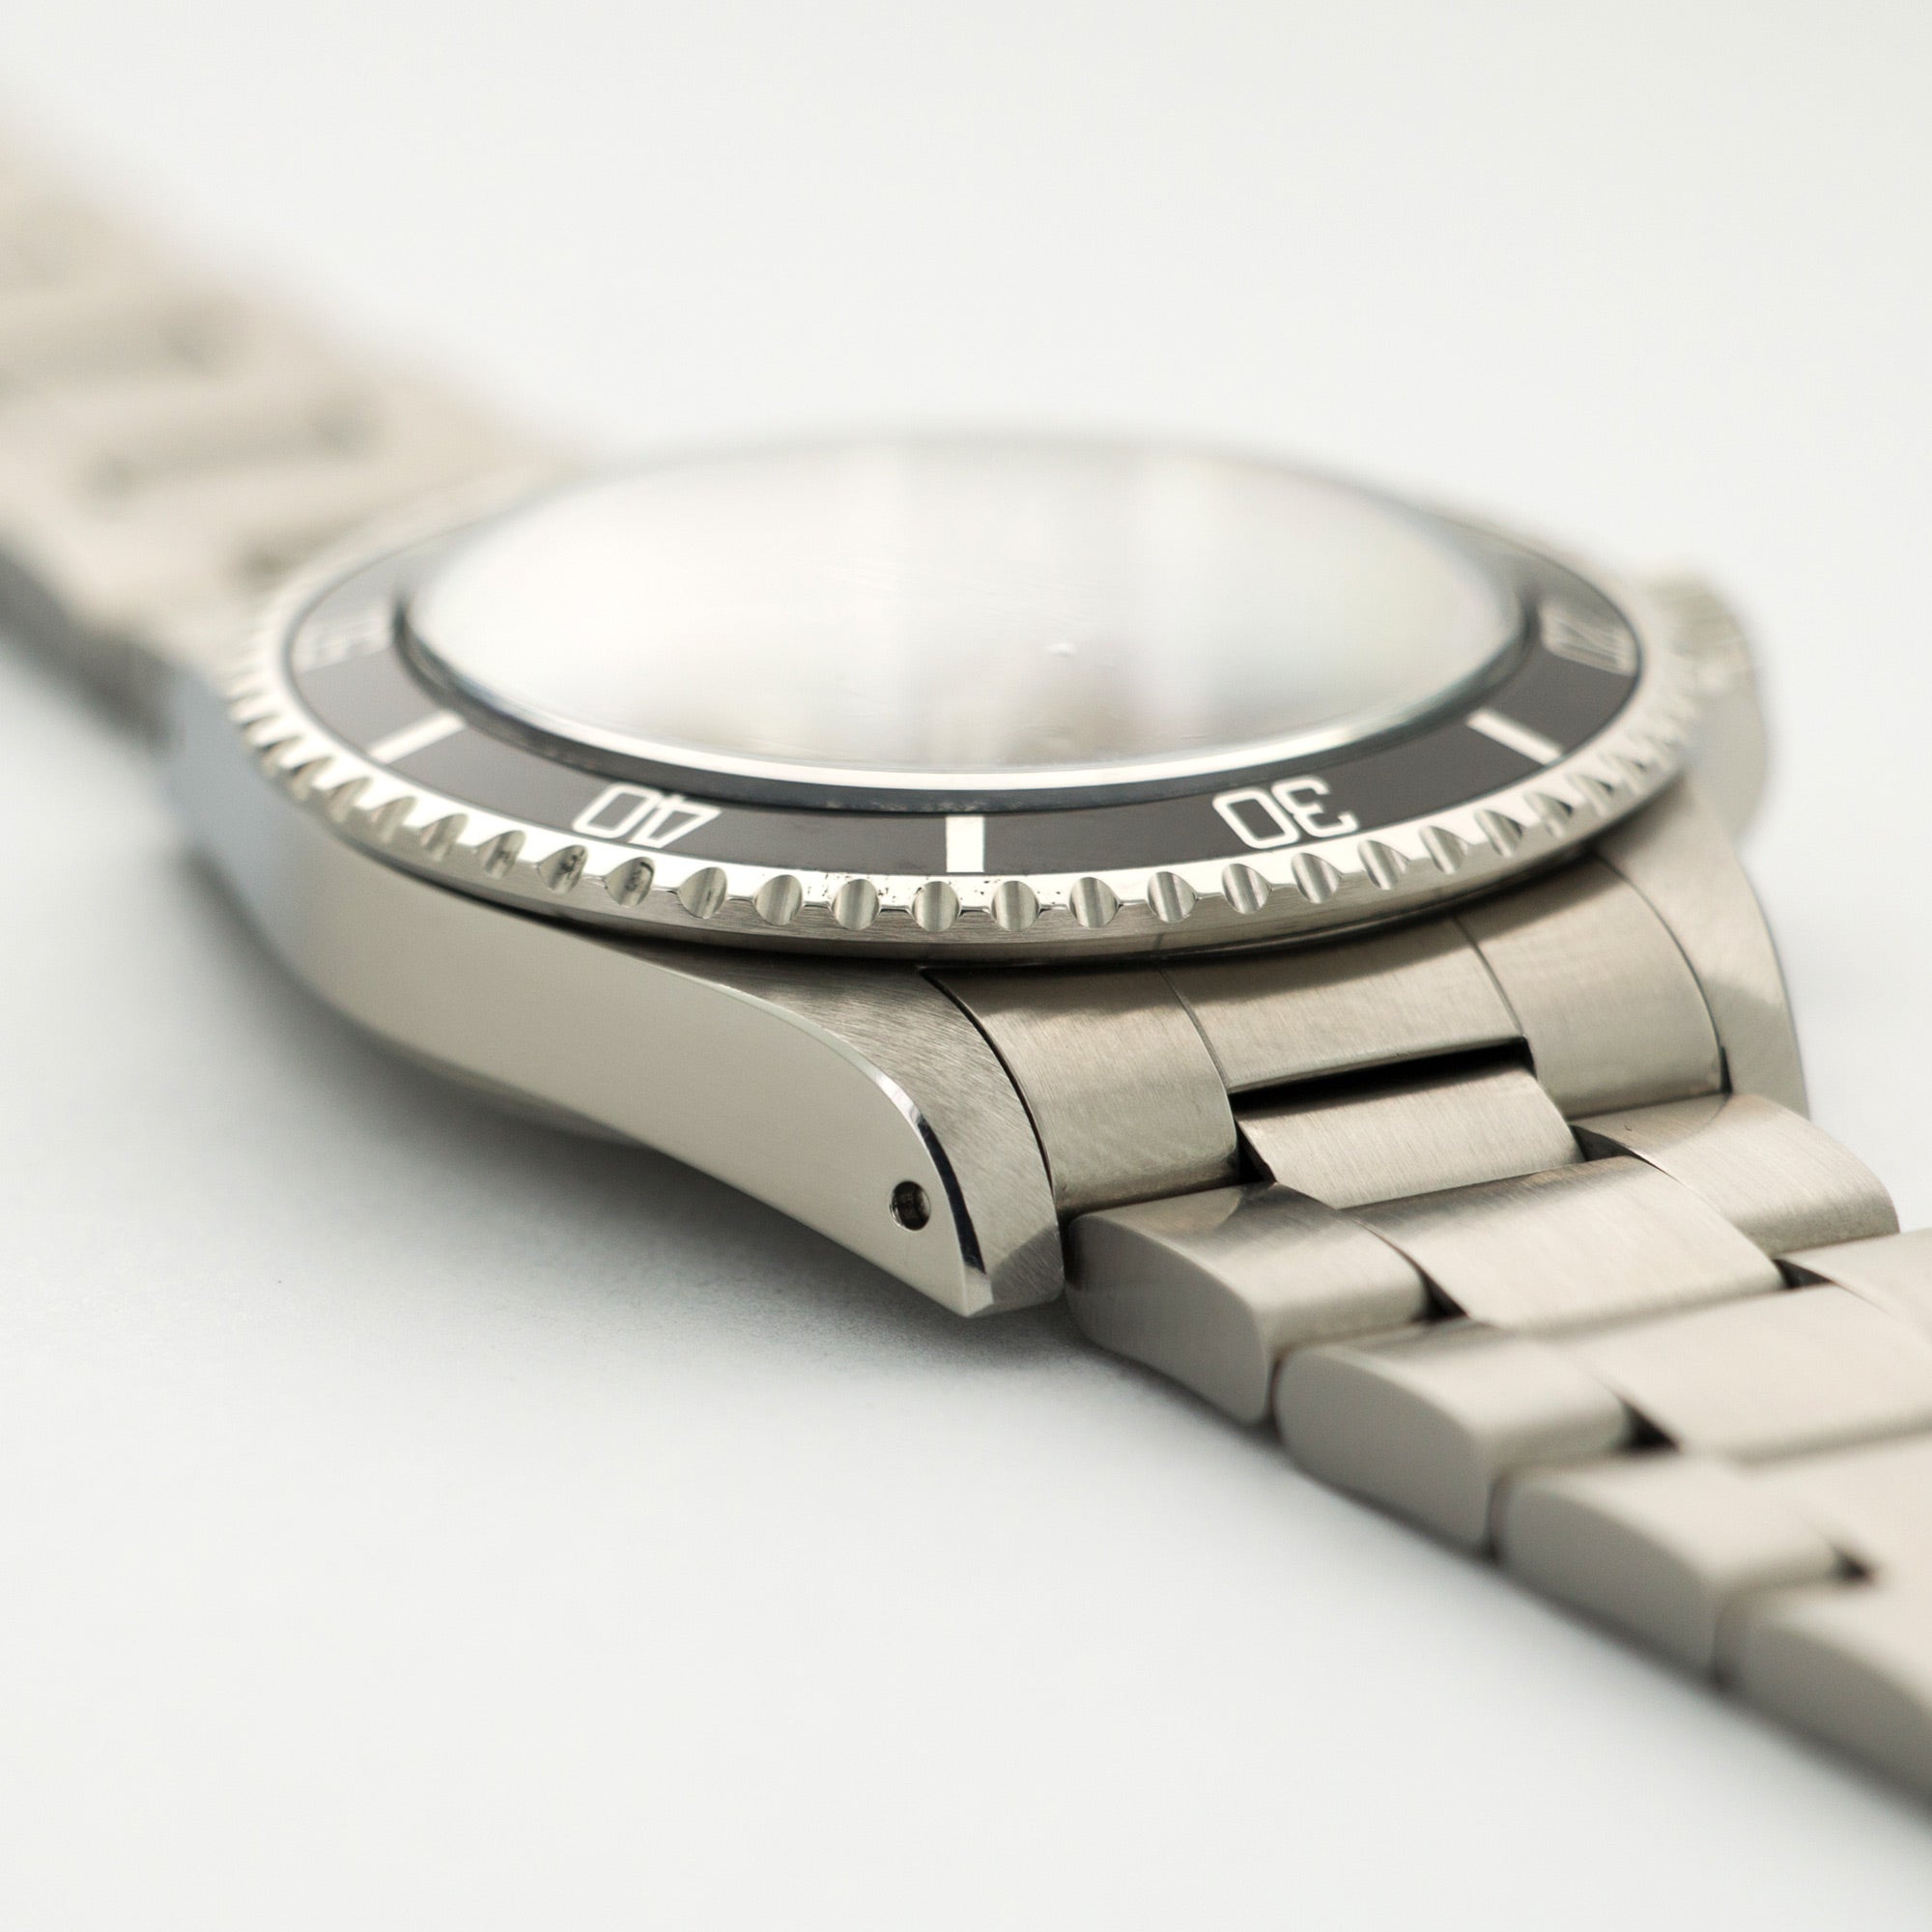 Rolex - Rolex Stainless Steel Submariner Watch Ref. 5513 - The Keystone Watches